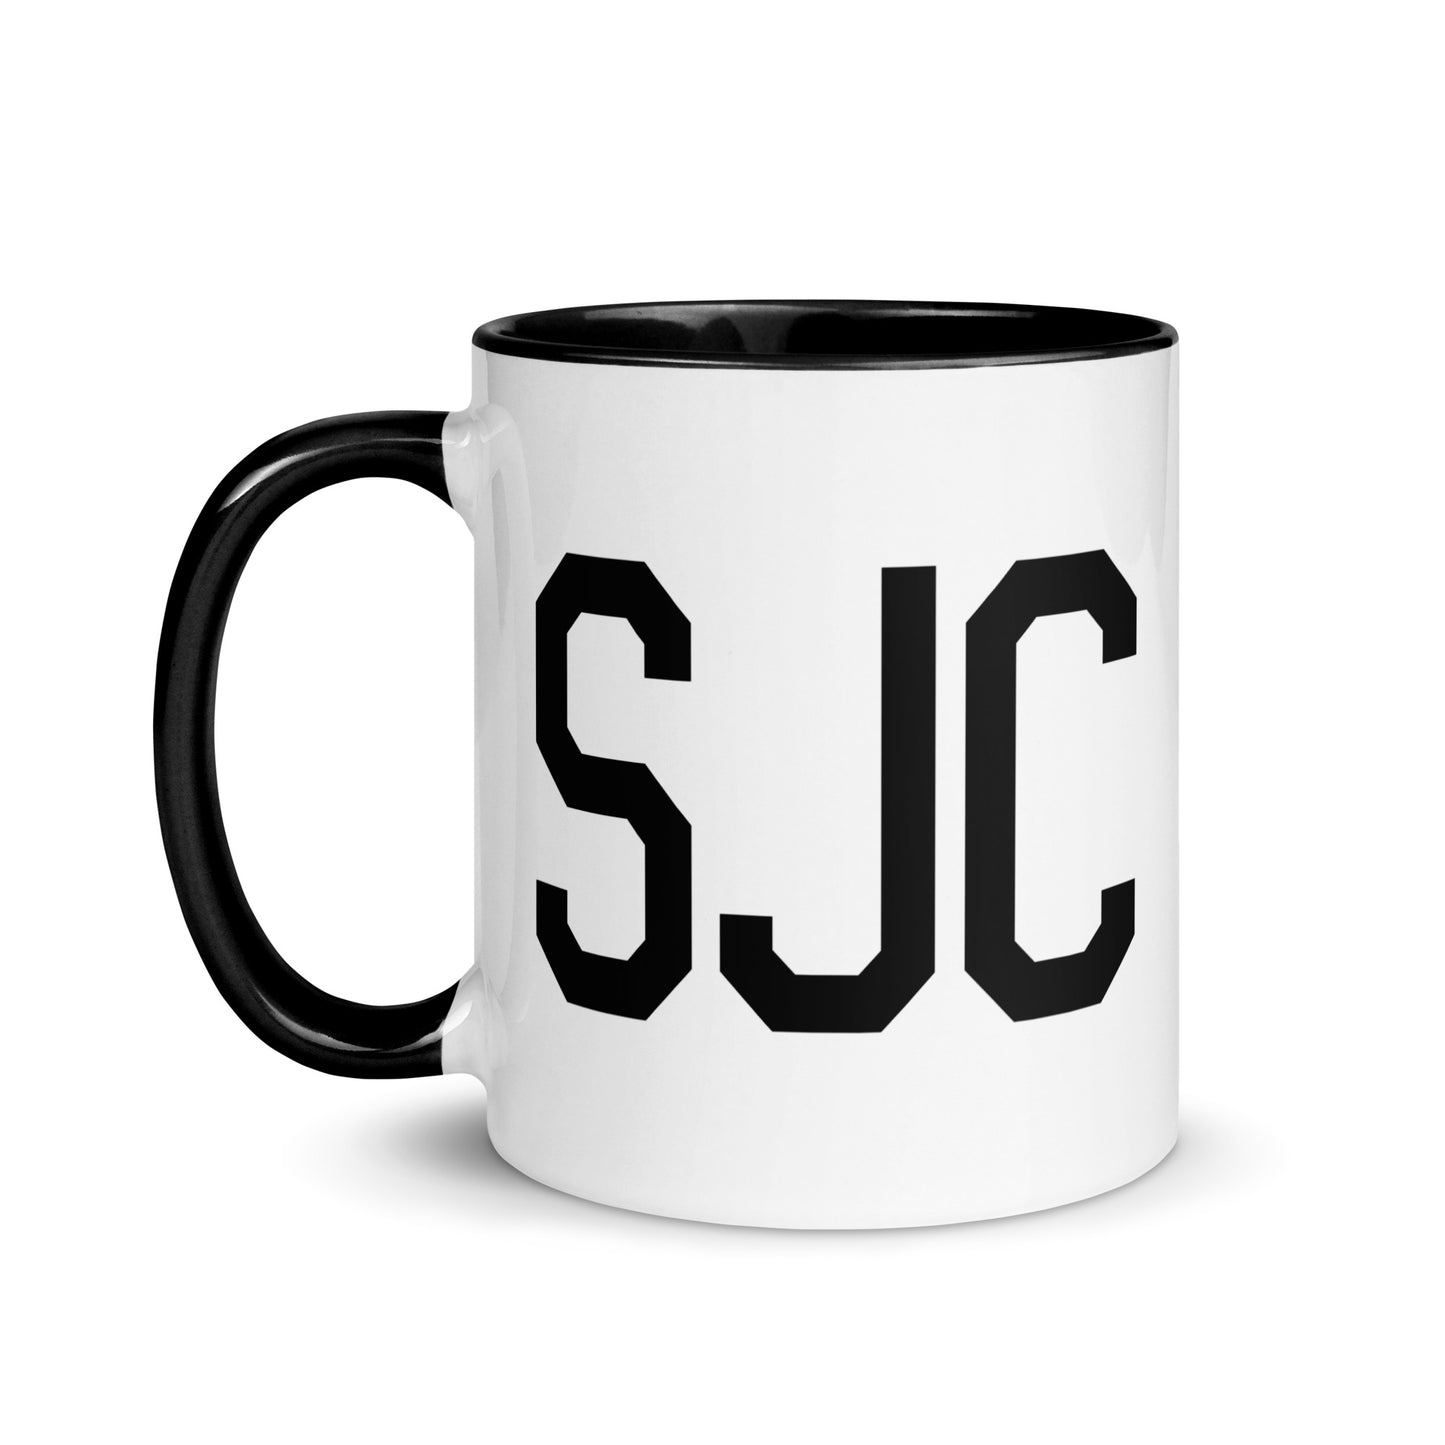 Aviation-Theme Coffee Mug - Black • SJC San Jose • YHM Designs - Image 03